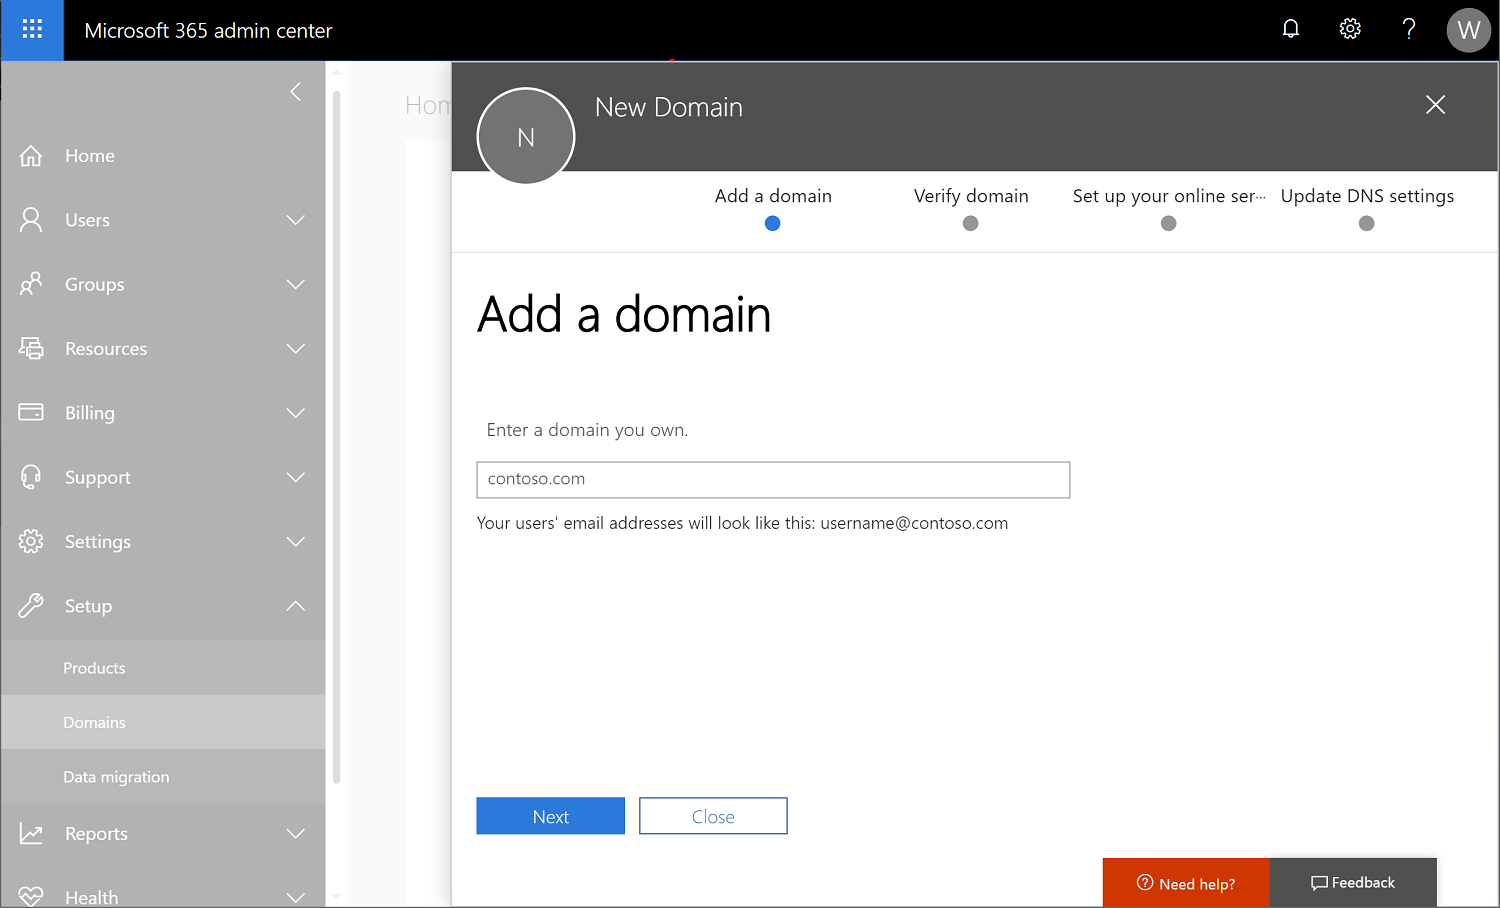 Schermopname van Microsoft 365-beheercentrum met Instellingen > Domeinen geselecteerd en er wordt een nieuwe domeinnaam toegevoegd